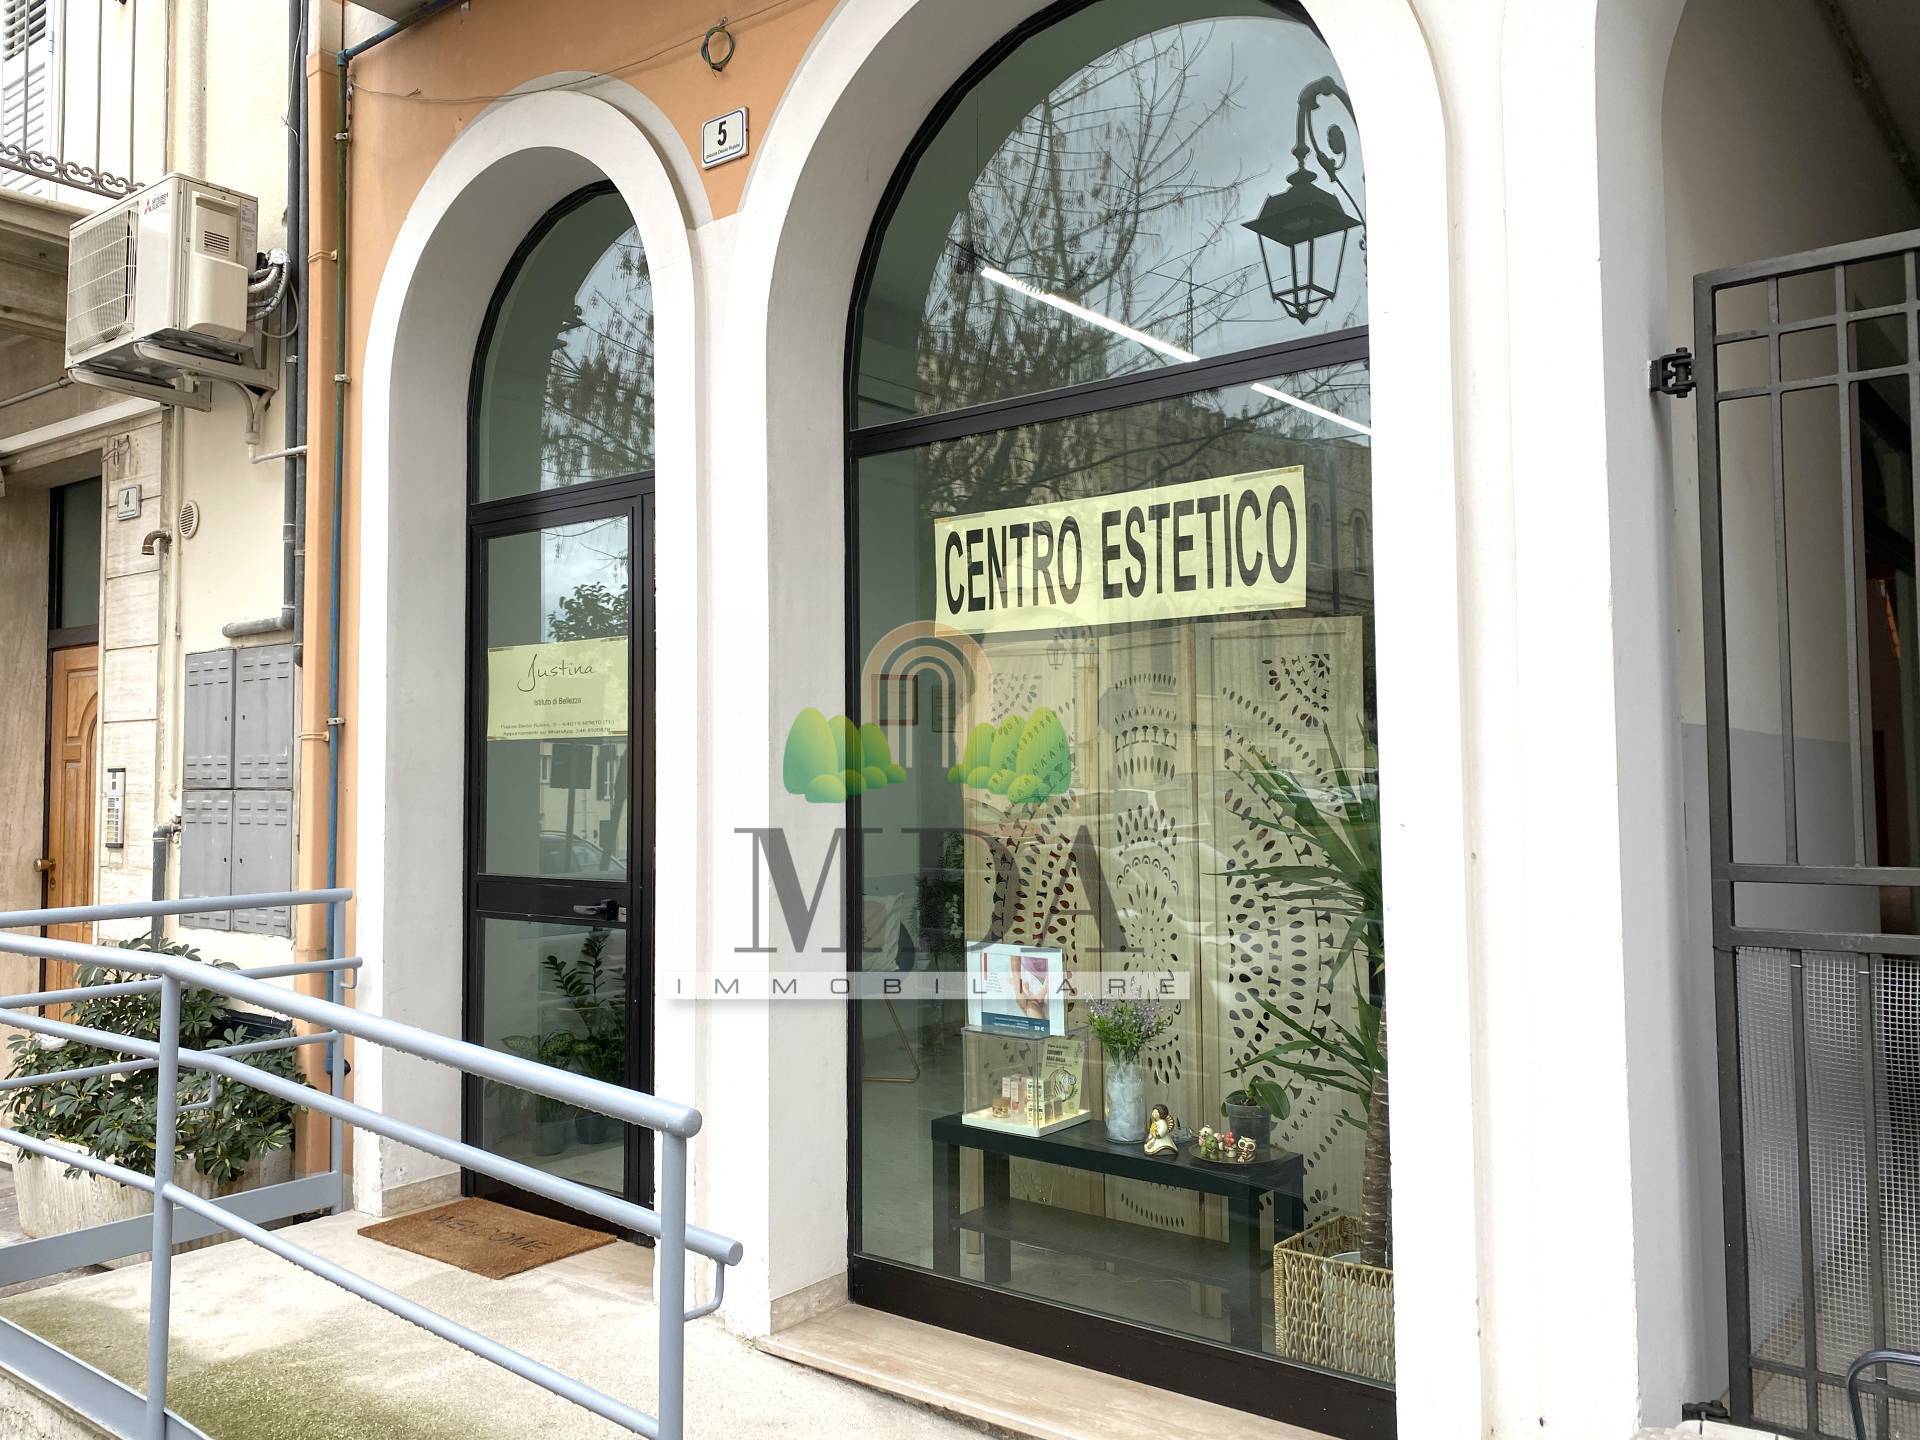 Negozio / Locale in vendita a Nereto, 9999 locali, zona Località: centro, prezzo € 59.000 | PortaleAgenzieImmobiliari.it